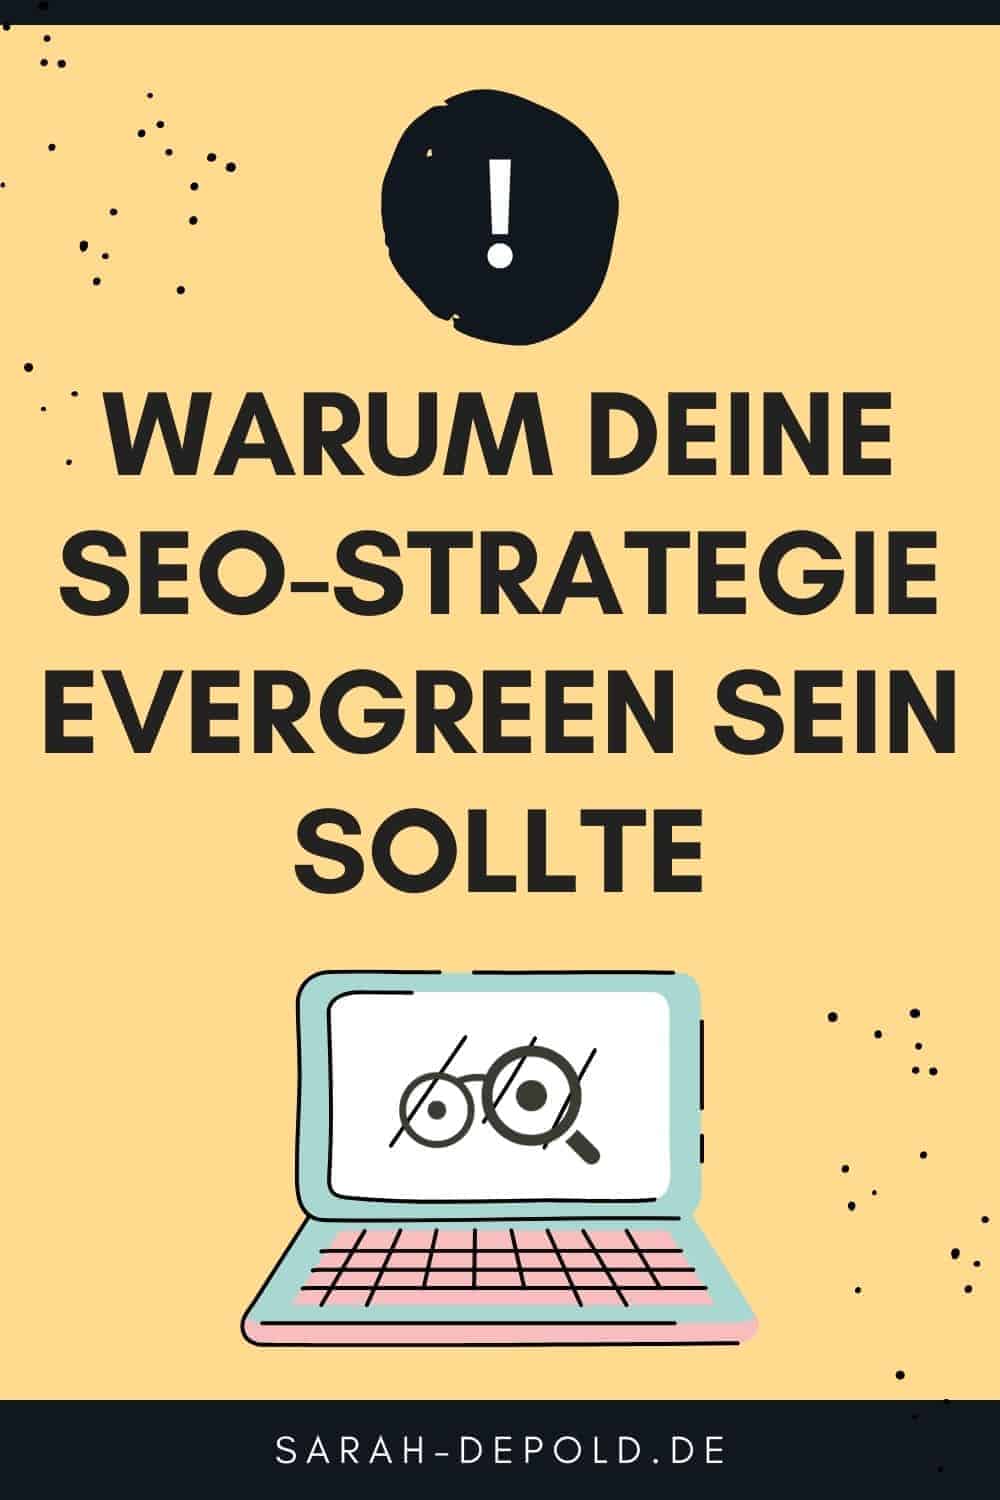 Warum deine SEO-Strategie evergreen sein sollte - Tipps für selbstständige auf sarah-depold.de